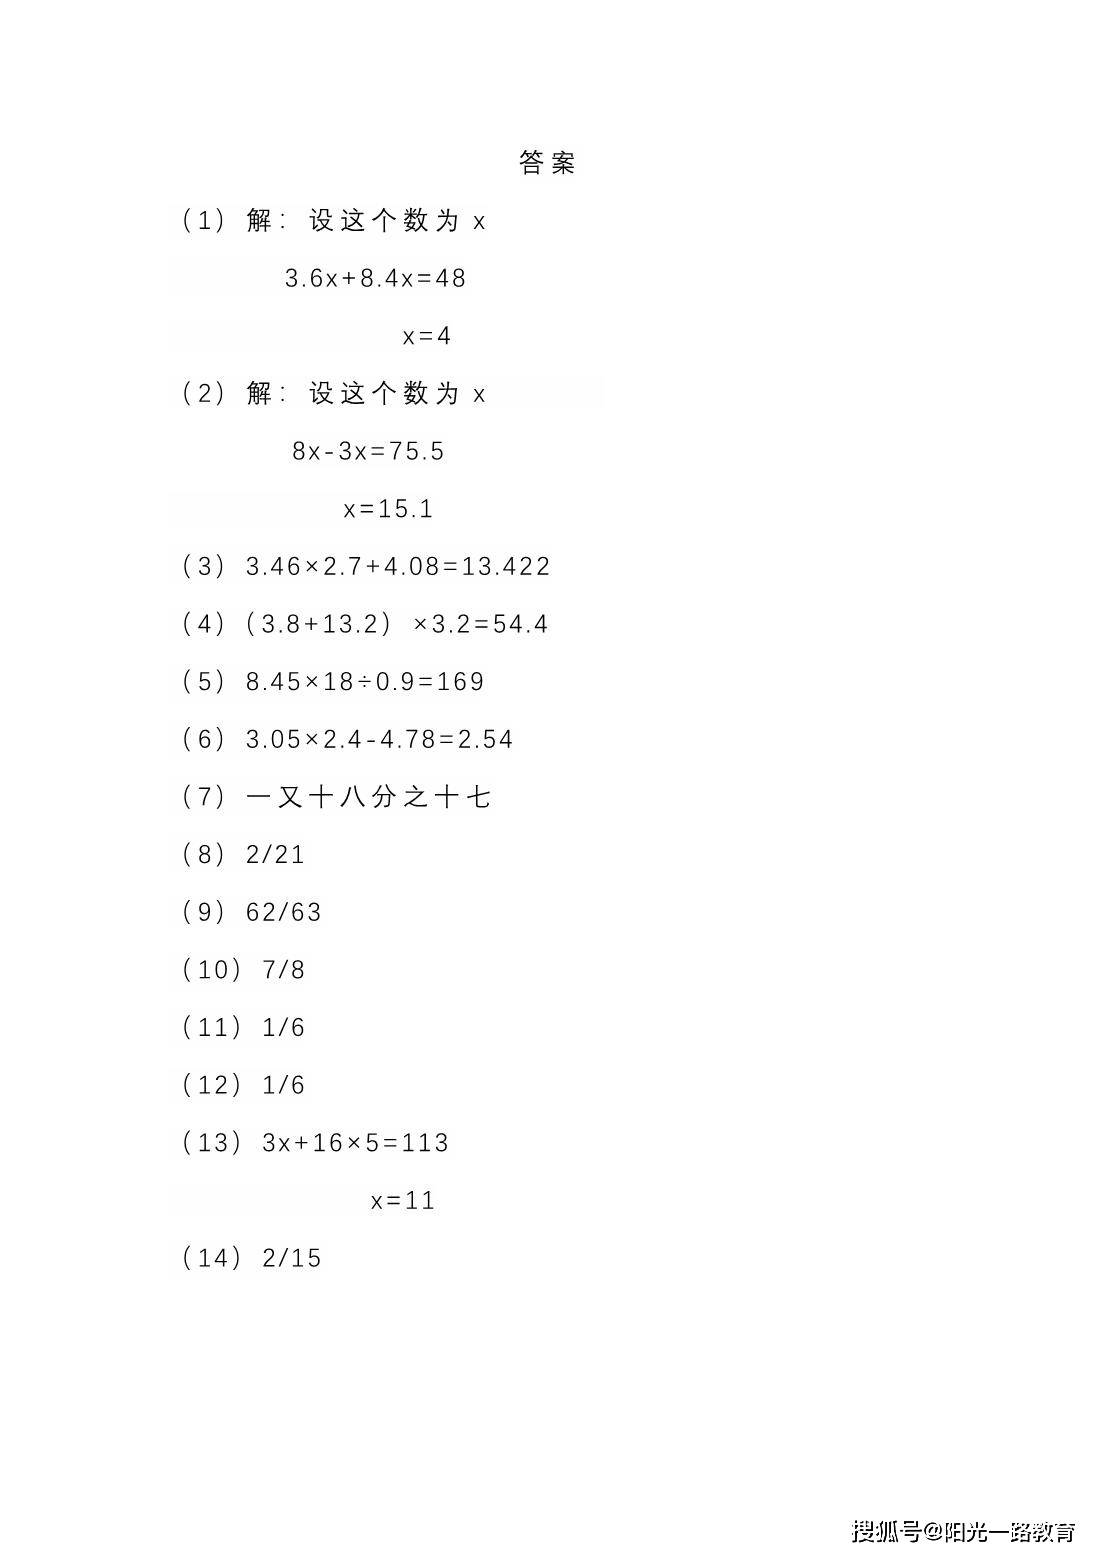 【阳光一路】五年级数学列式计算及答案!